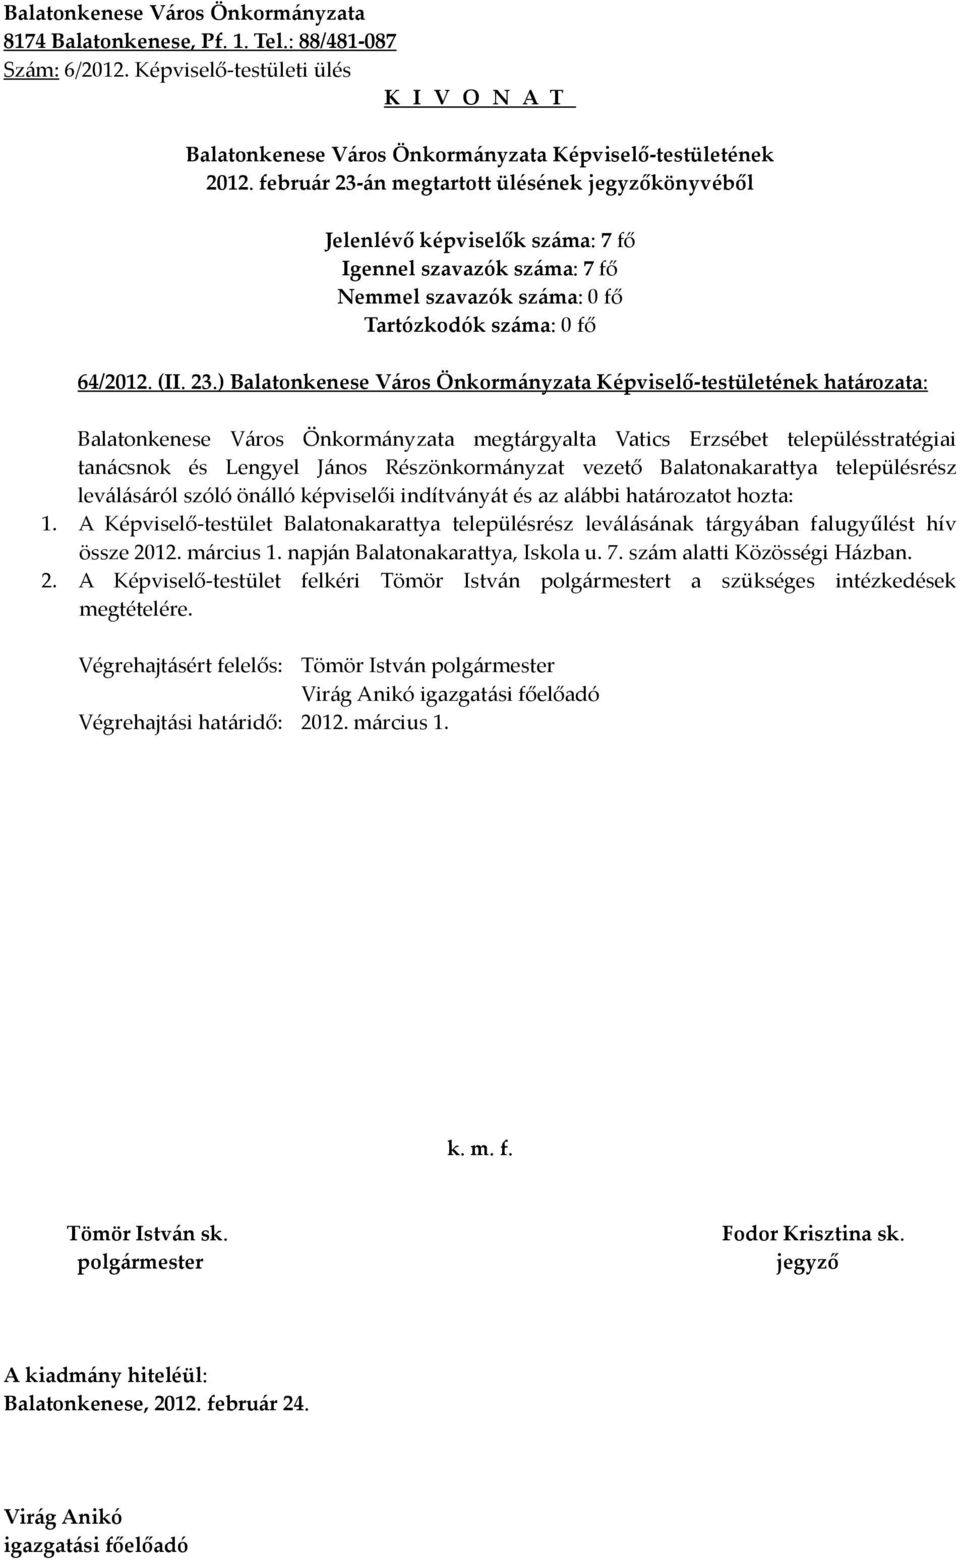 ) határozata: Balatonkenese Város Önkormányzata megtárgyalta Vatics Erzsébet településstratégiai tanácsnok és Lengyel János Részönkormányzat vezető Balatonakarattya